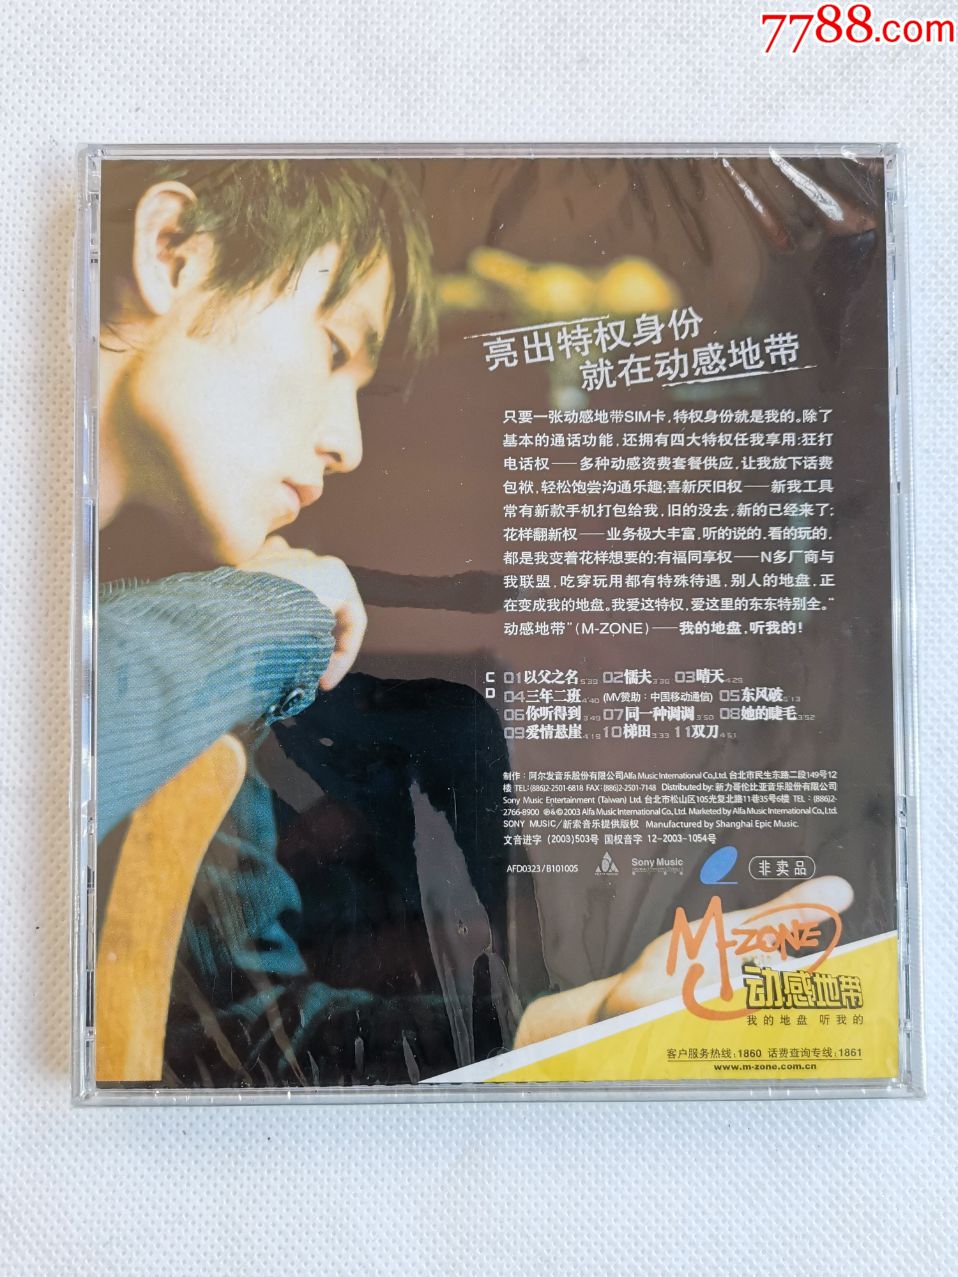 周杰伦专辑《叶惠美》上海声像正版cd动感地带版,全新